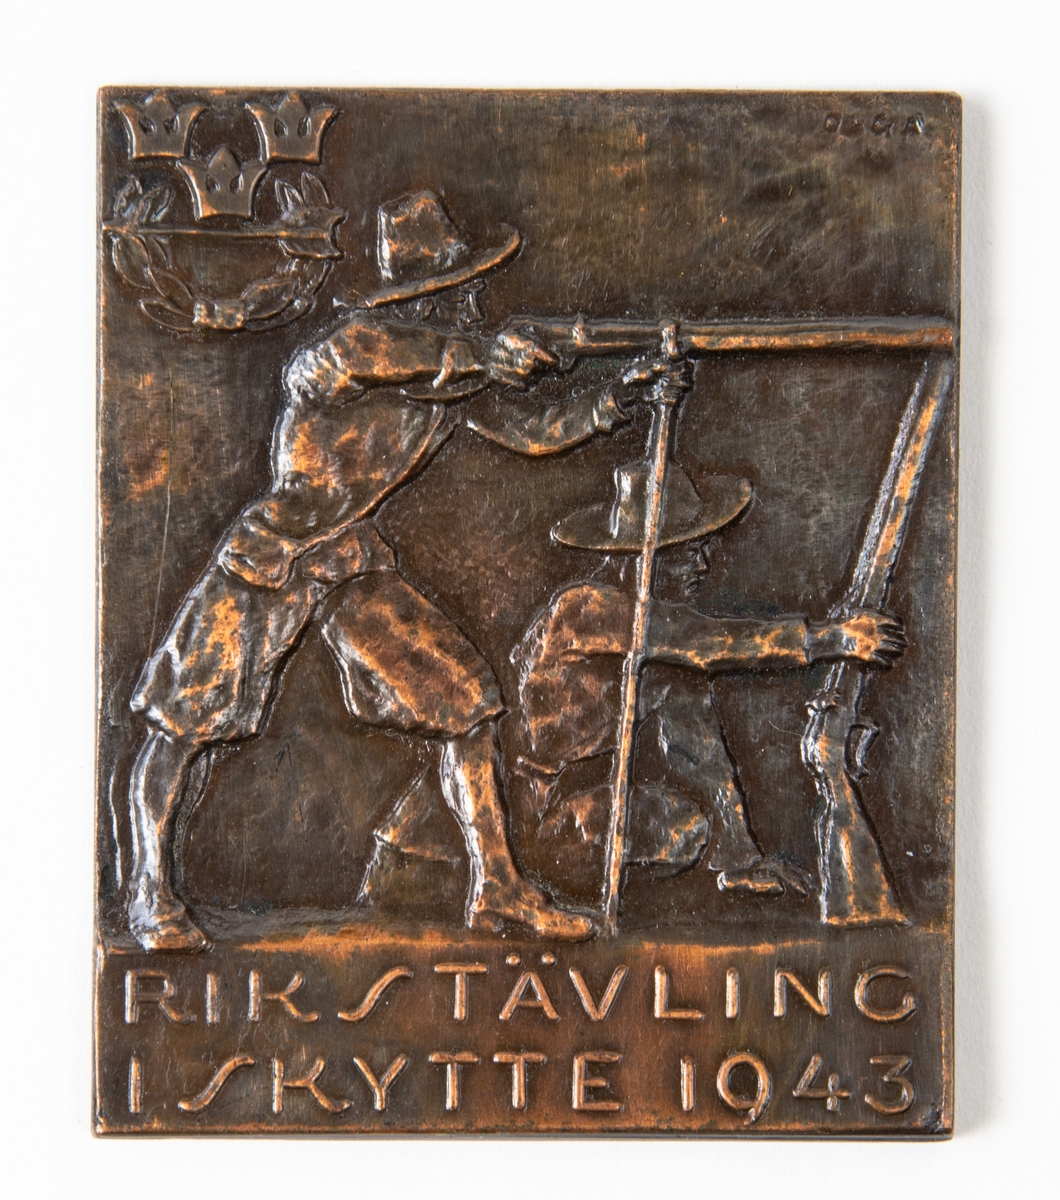 Bronsplakett, Rikstävling i skytte 1943. Motiv med en relief föreställande två män med gevär, en sitter på knä, en står upp och siktar. I övre vänstra hörnet finns en krans med en pil i, samt tre kronor över.